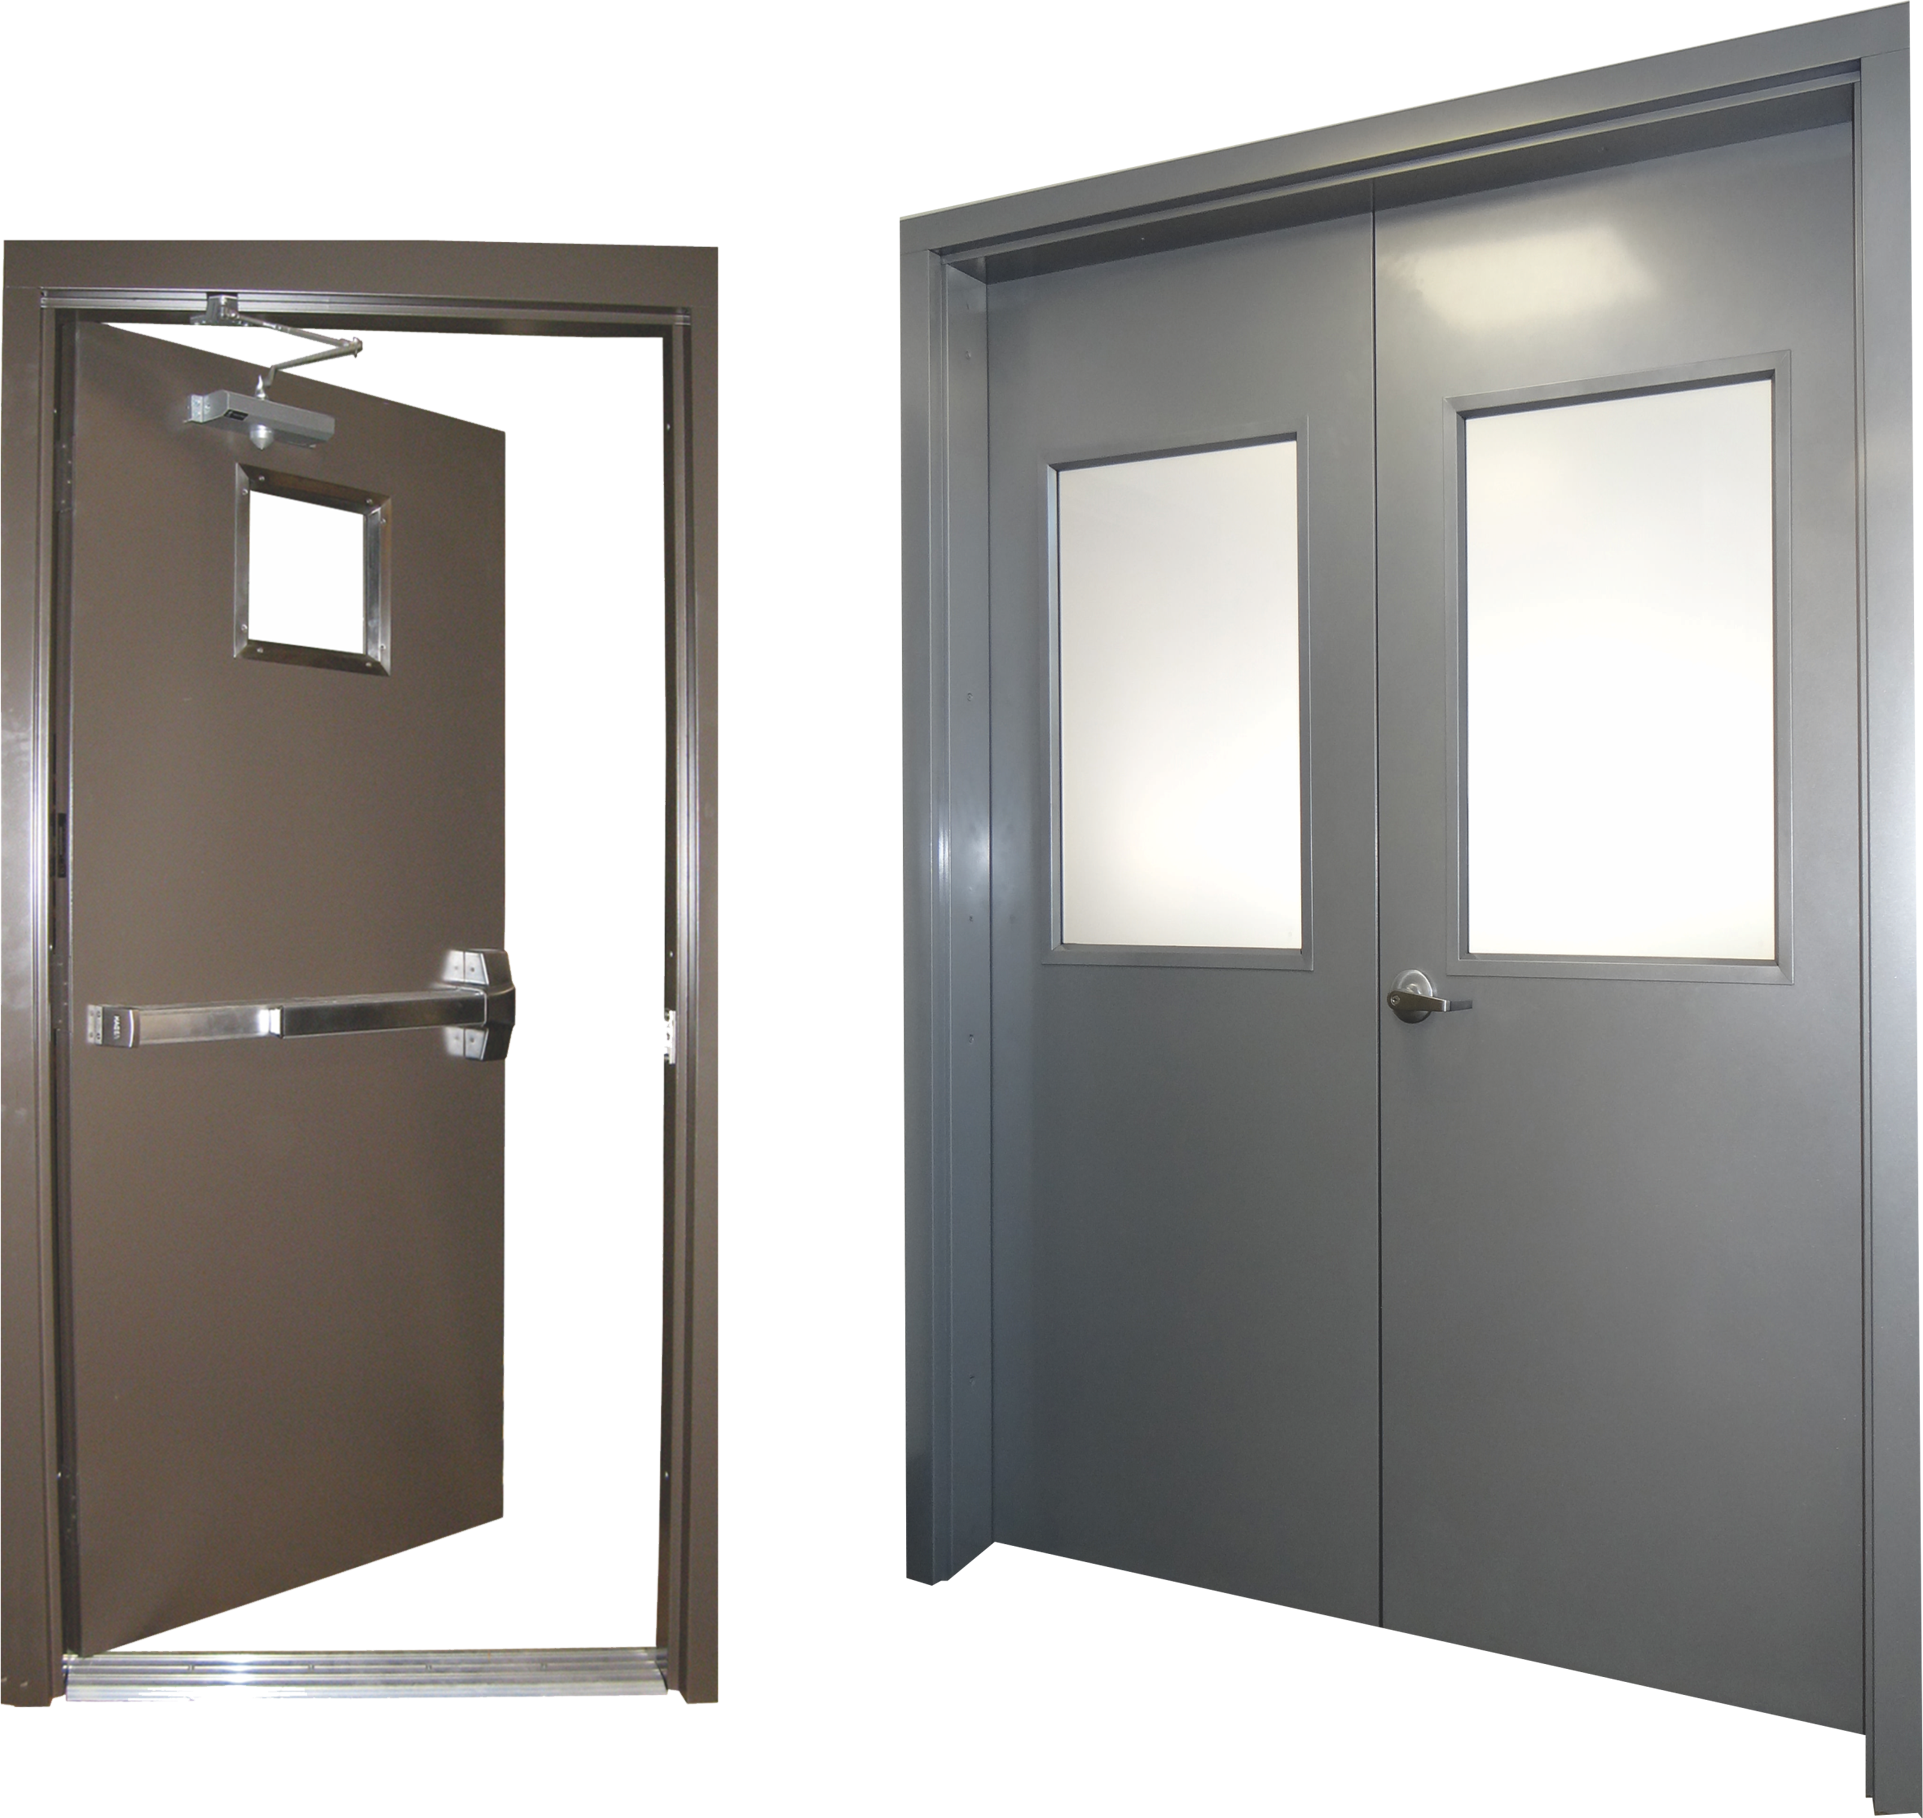 With Frame Security Steel Door Set New Fire Door Self Storage Garage 